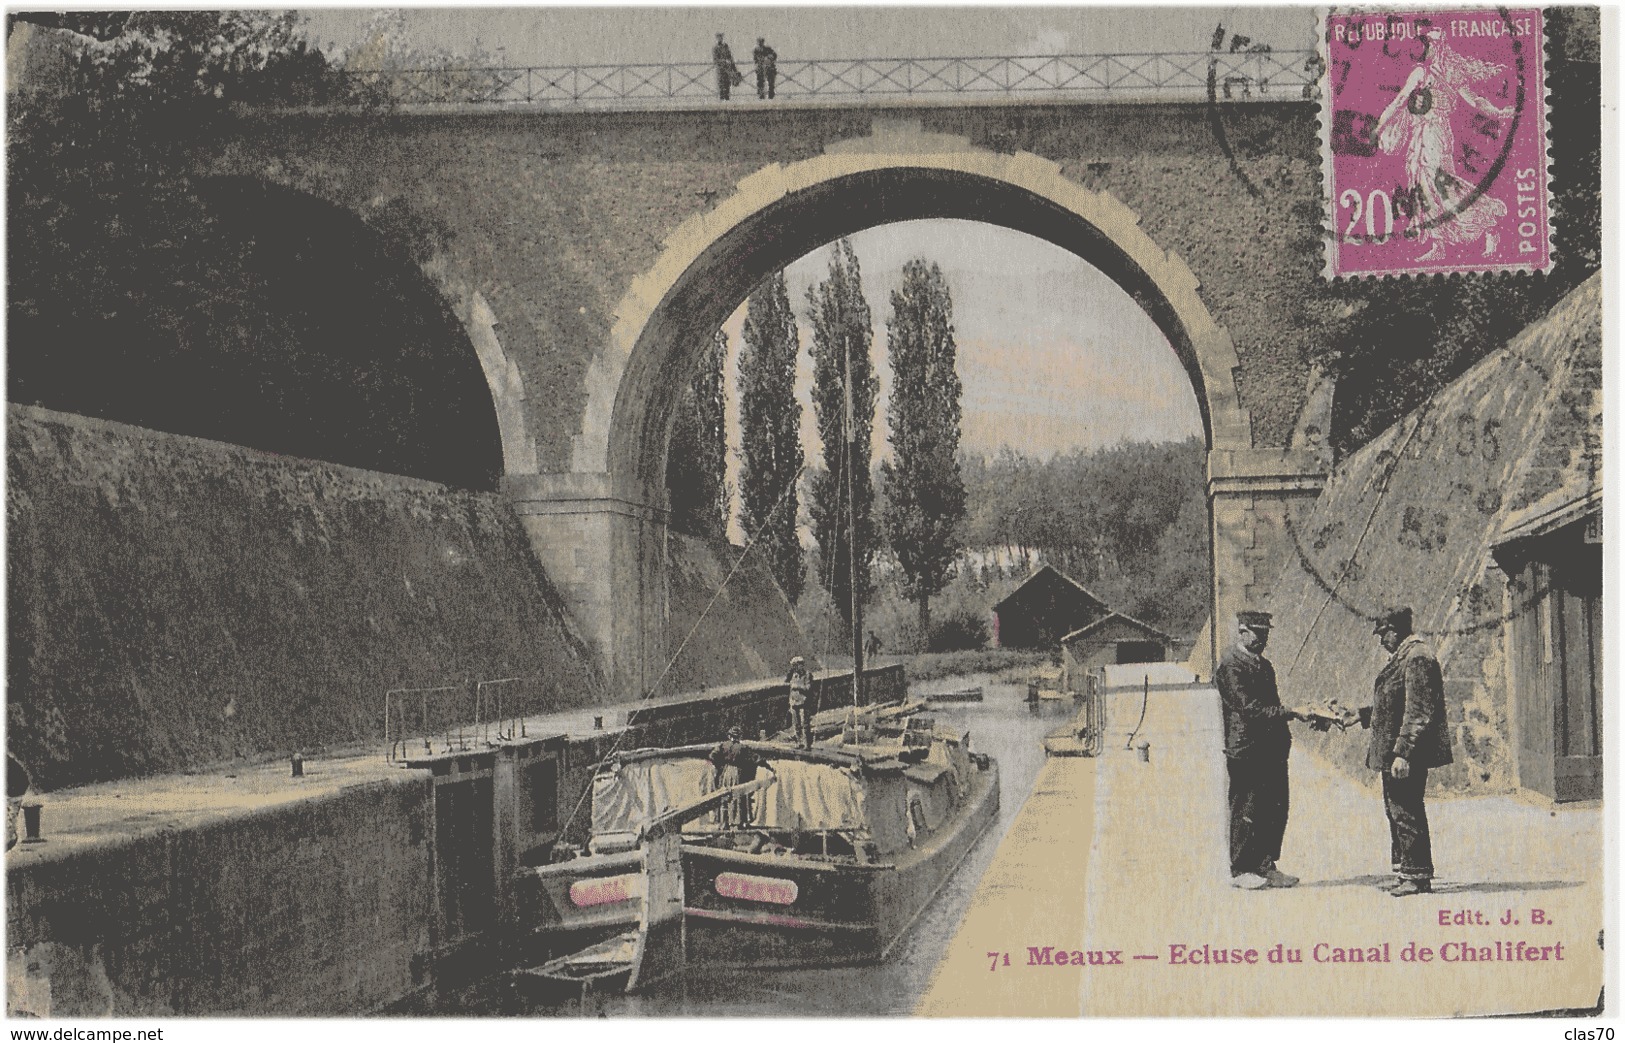 MEAUX - ECLUSE DU CANAL DE CHALIFERT - BELLE ANIMATION - VERS 1900 - Meaux